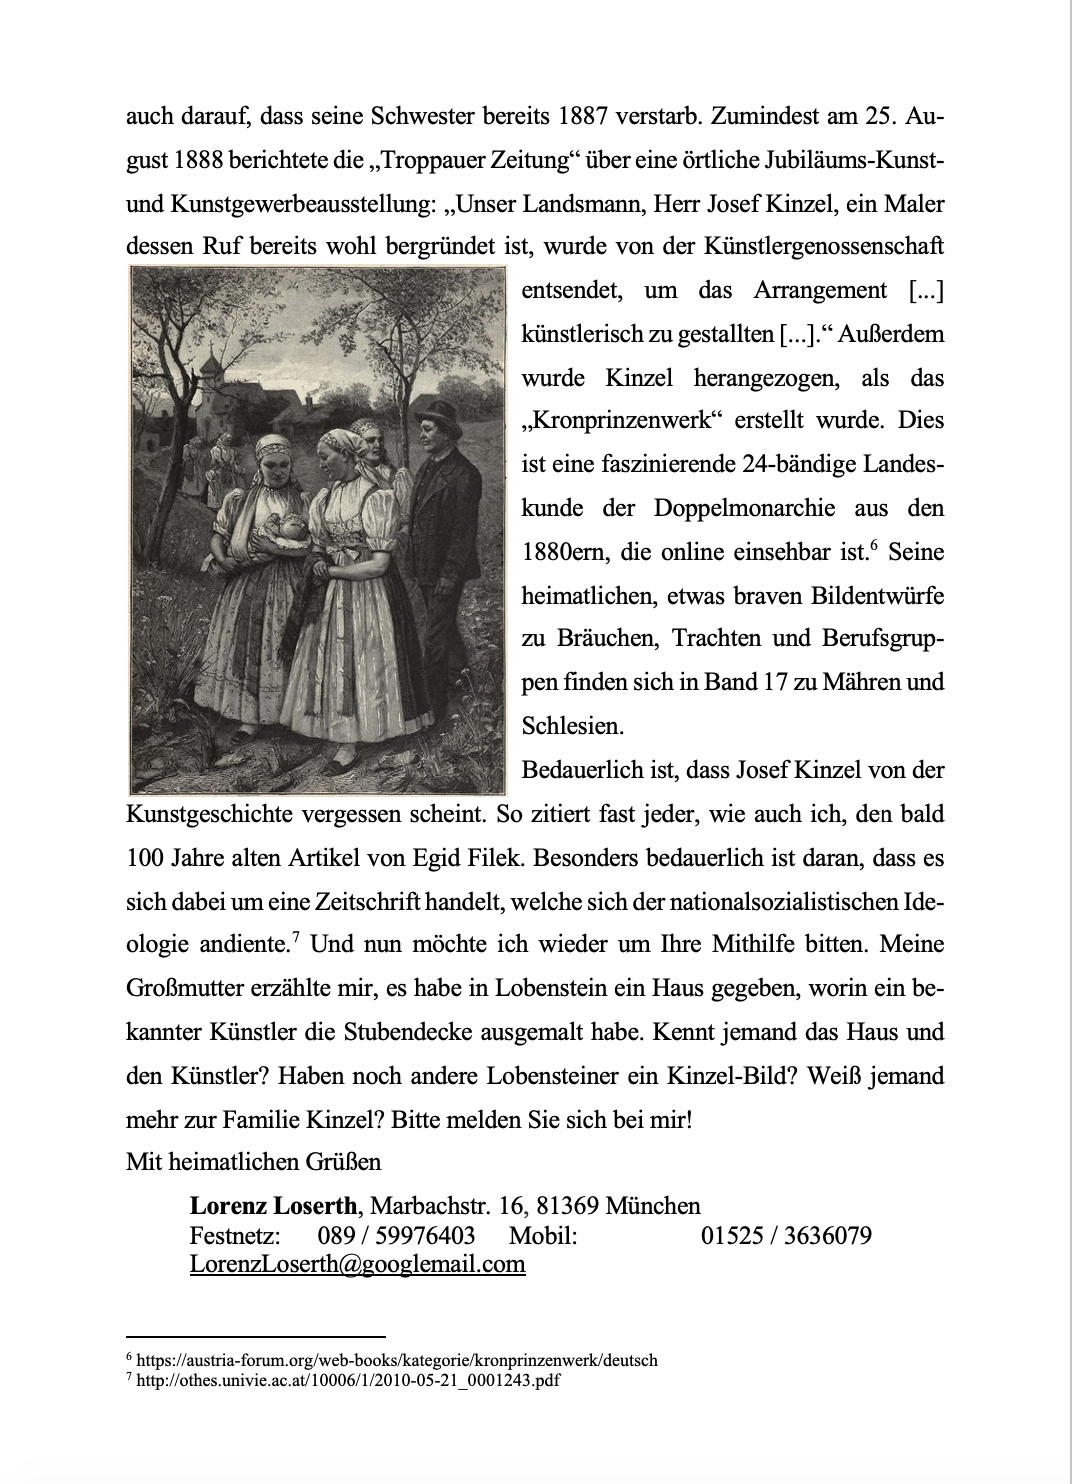 Gerne sende ich eine Ausgabe des Jägerndorfer Heimatbriefes zu: LorenzLoserth@googlemail.com